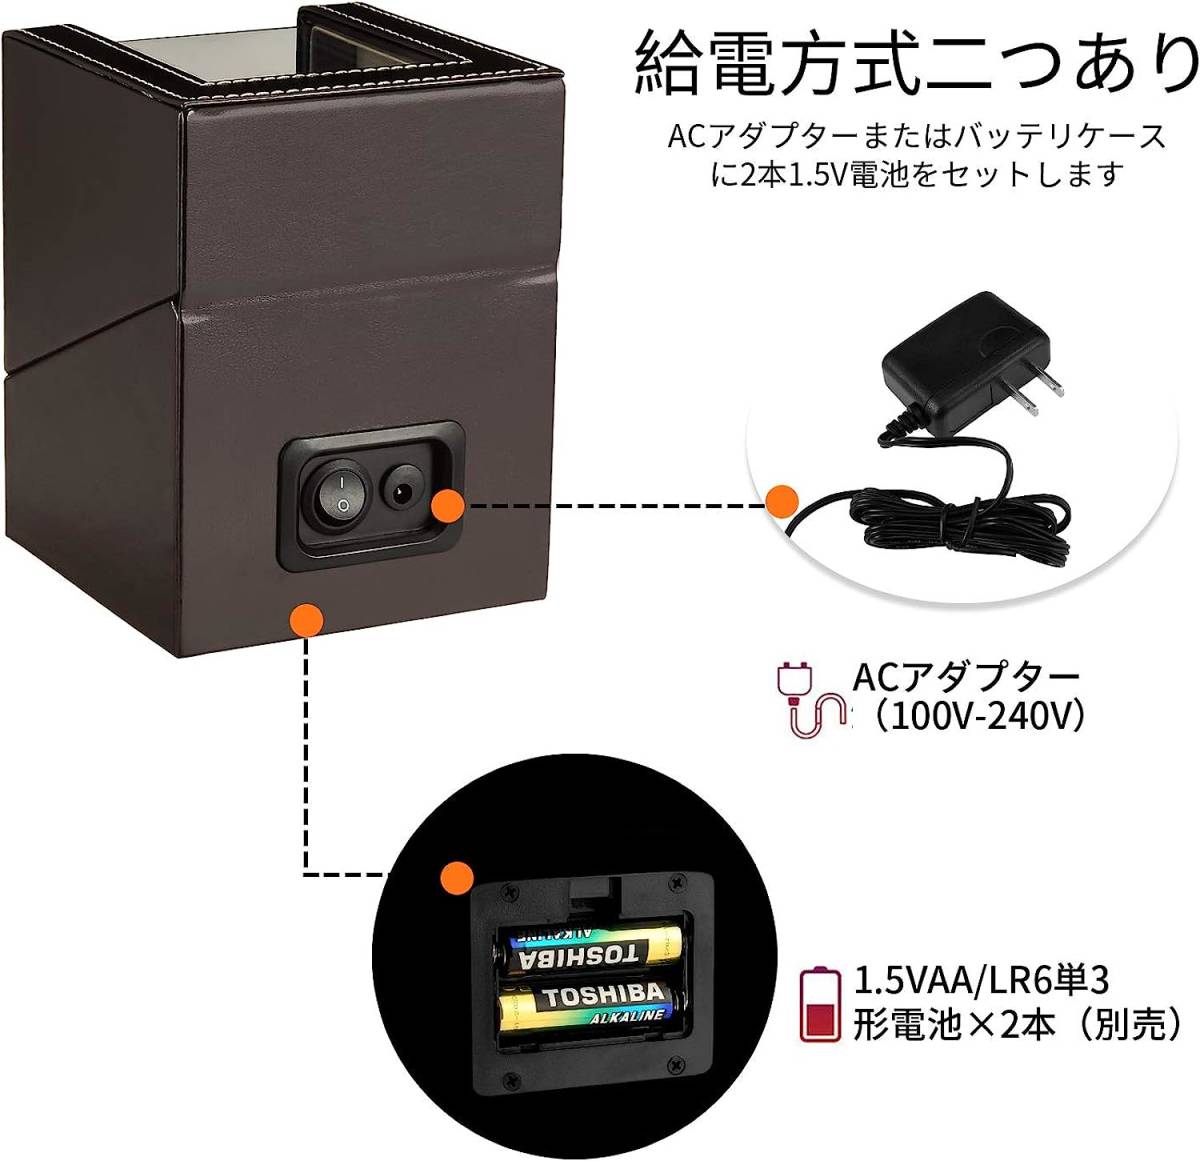 静音な日本製マブチモーター採用 自動巻き時計 ワインディングマシーン 自動巻き上げ機 高級PU皮質 ブラウン色 1本巻きタイプ